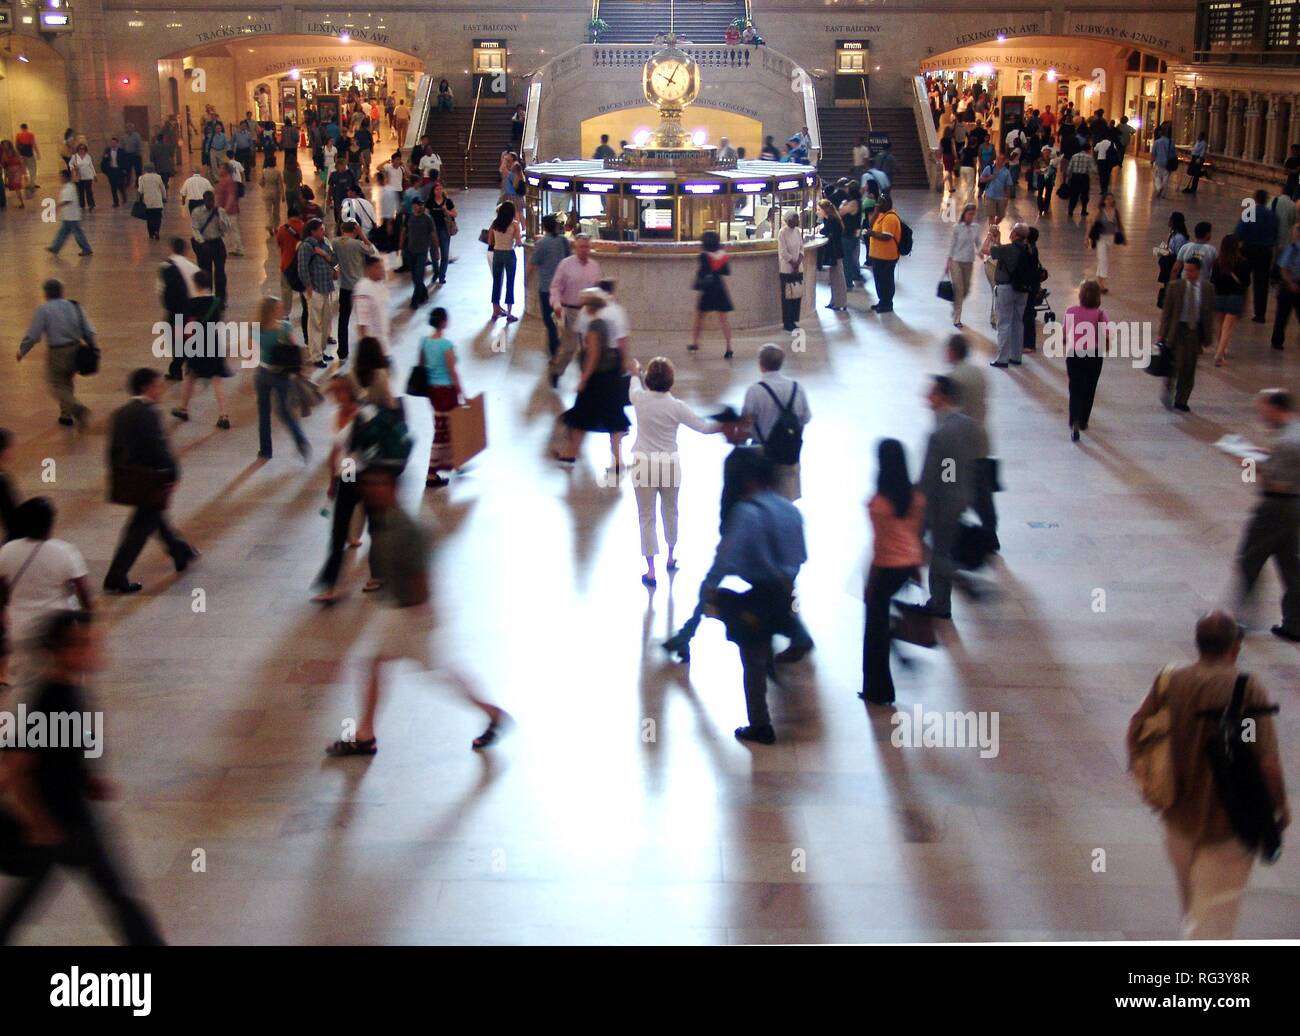 Stati Uniti d'America, Stati Uniti d'America, New York City: persone nella sala principale della Grand Central Station. Foto Stock